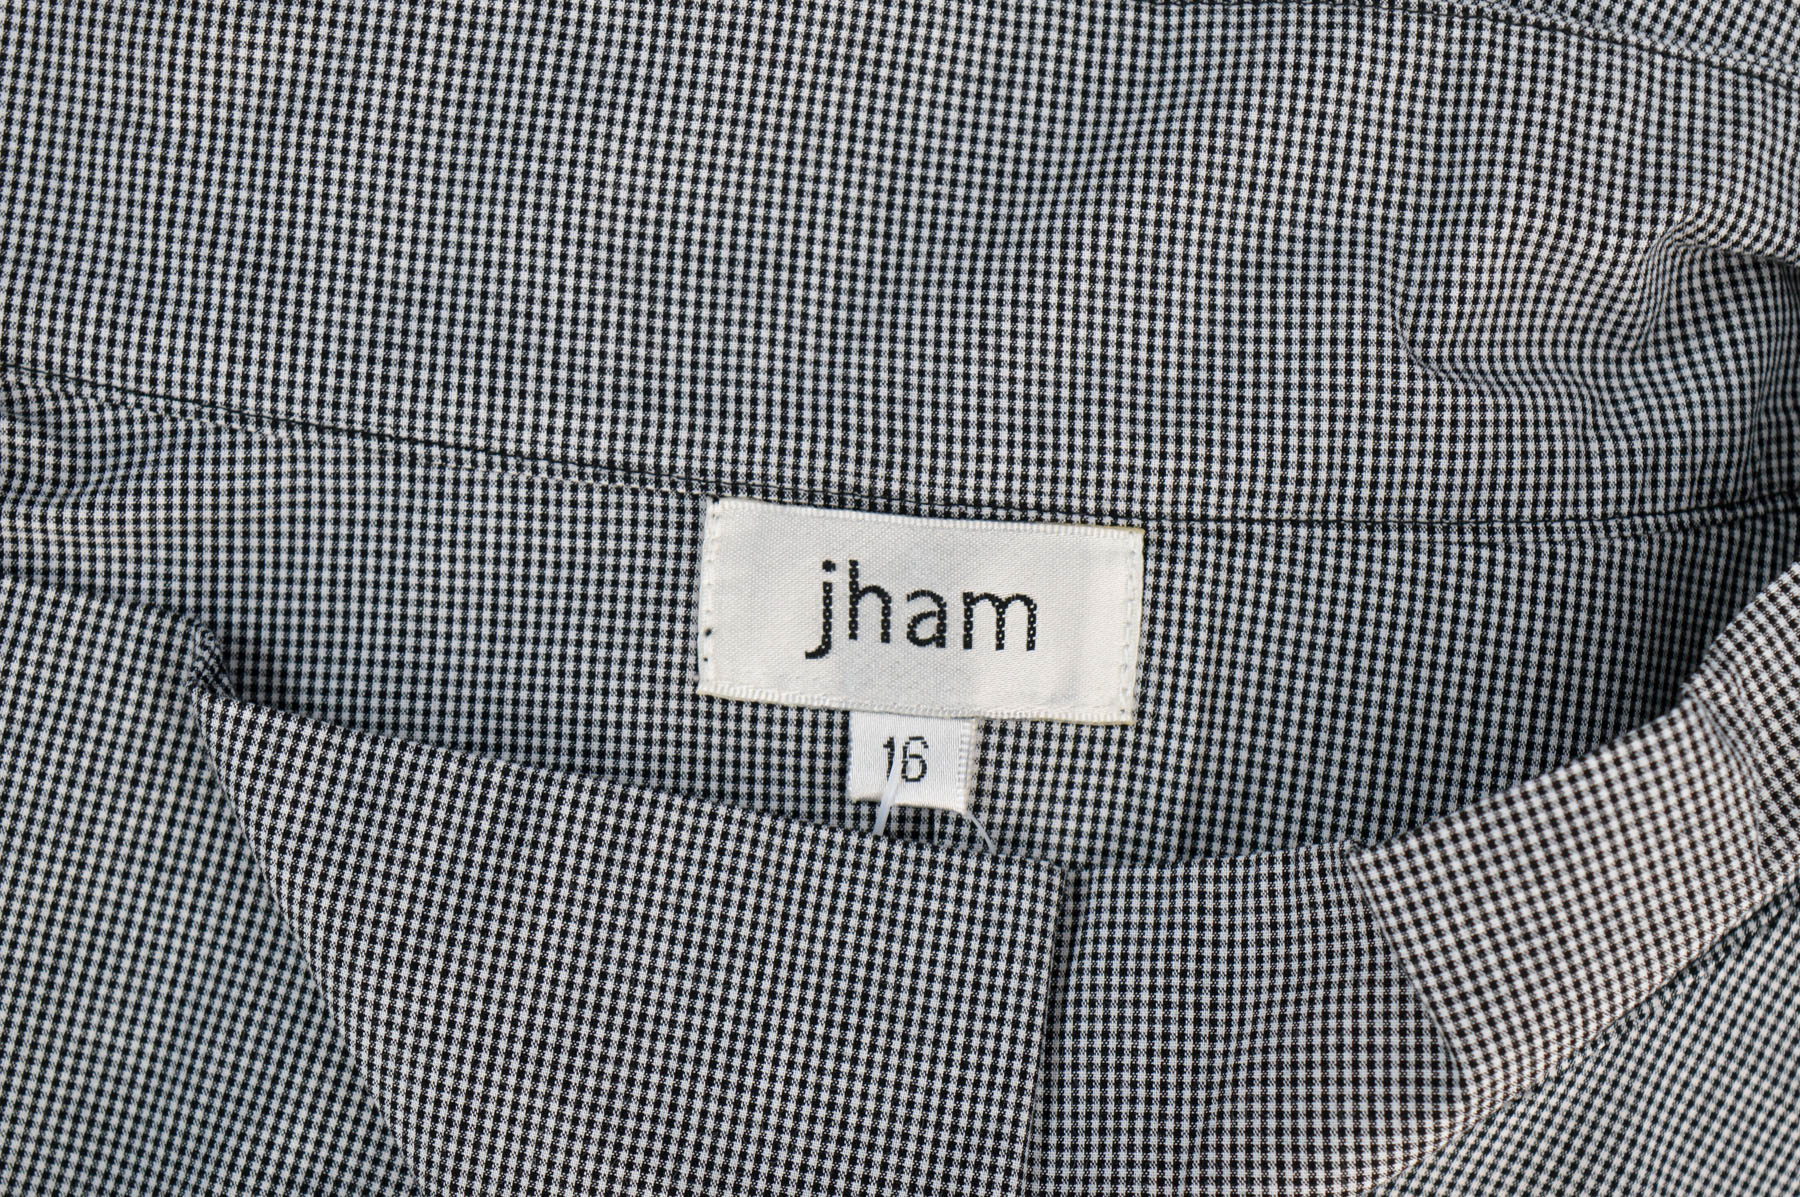 Women's shirt - Jham - 2